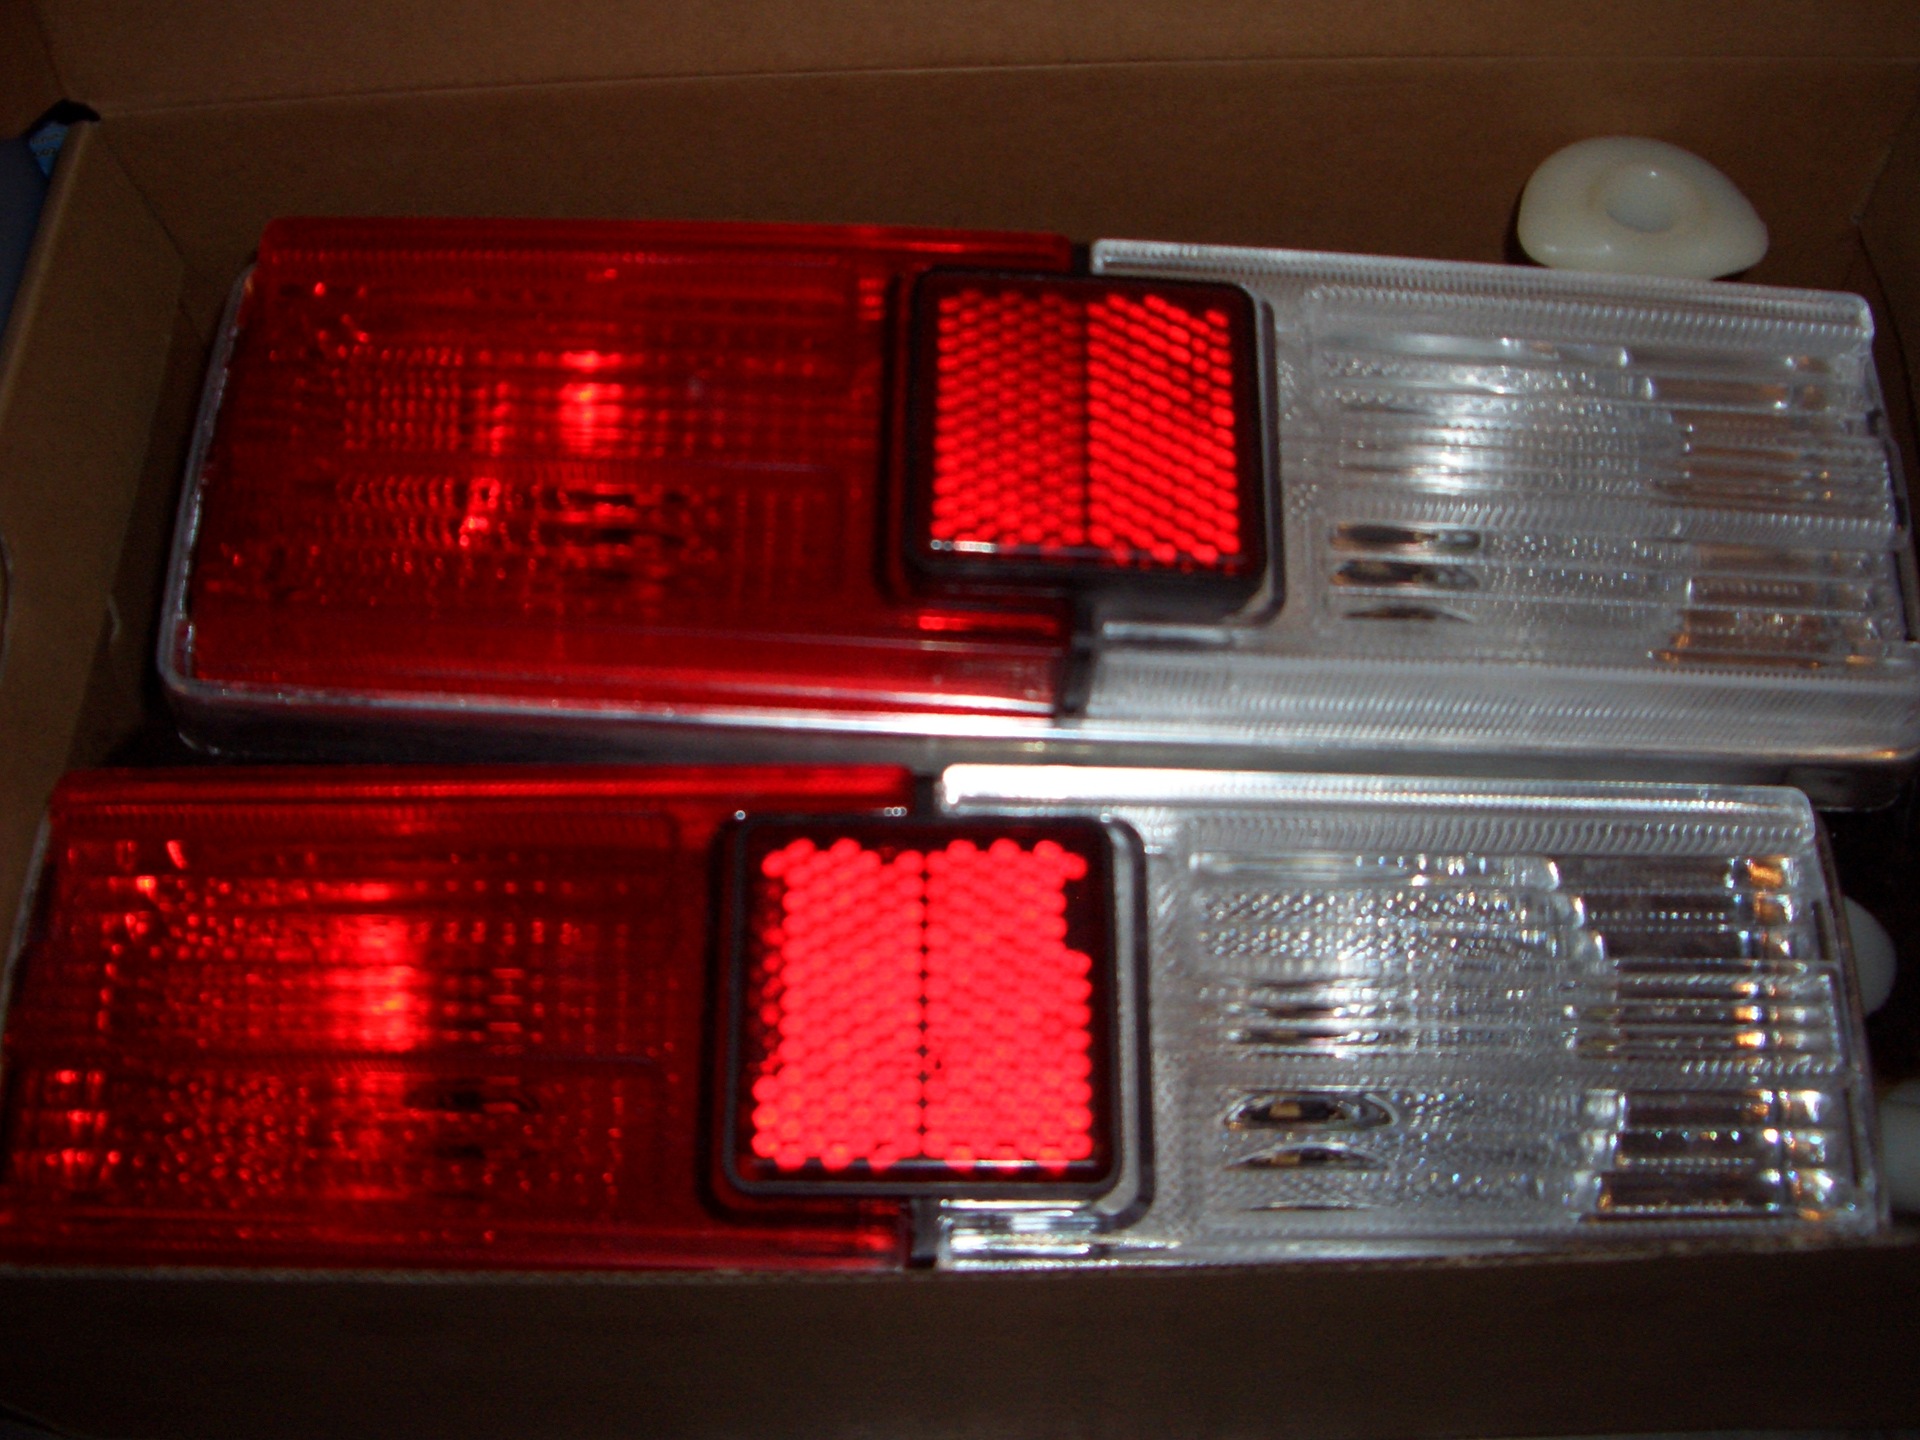 Задние фары ваз тюнинг. Задние фонари на ВАЗ 2101 диодные. Задние фары ВАЗ 2101. Задние фонари ВАЗ 2101 led. Диодные задние фары ВАЗ 2101.